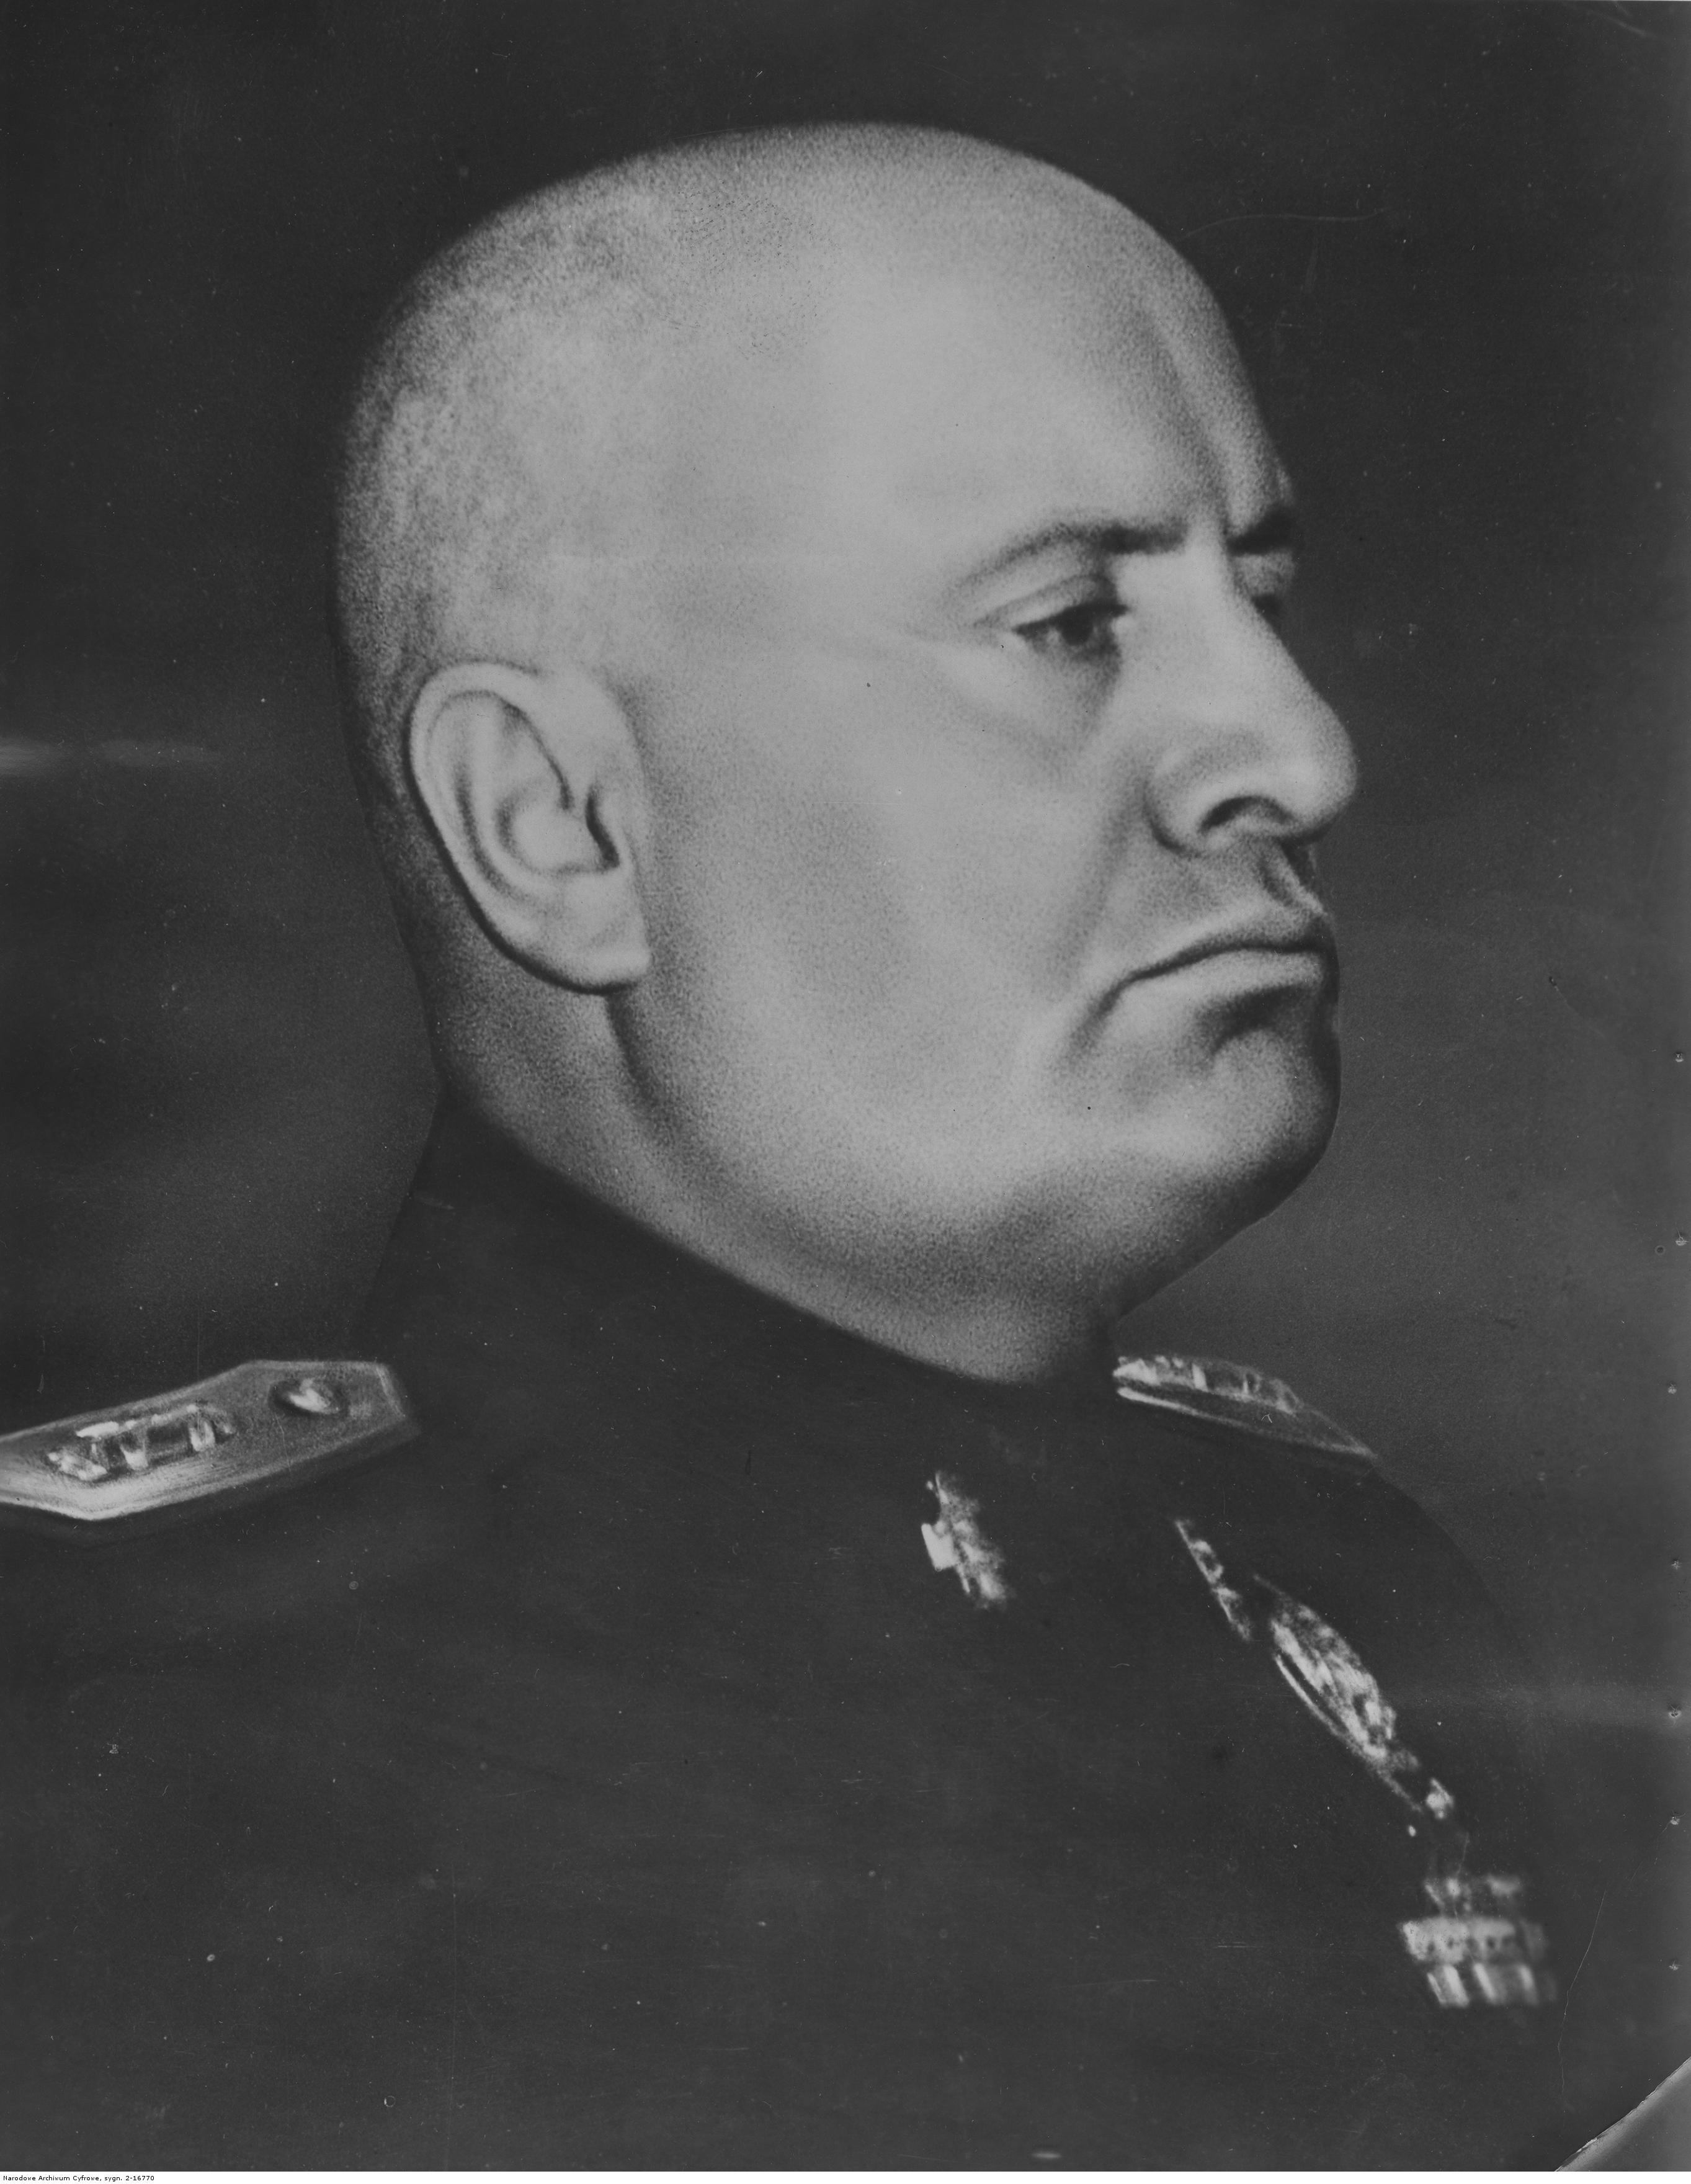 File:Benito Mussolini portrait as dictator.jpg - Wikimedia Commons